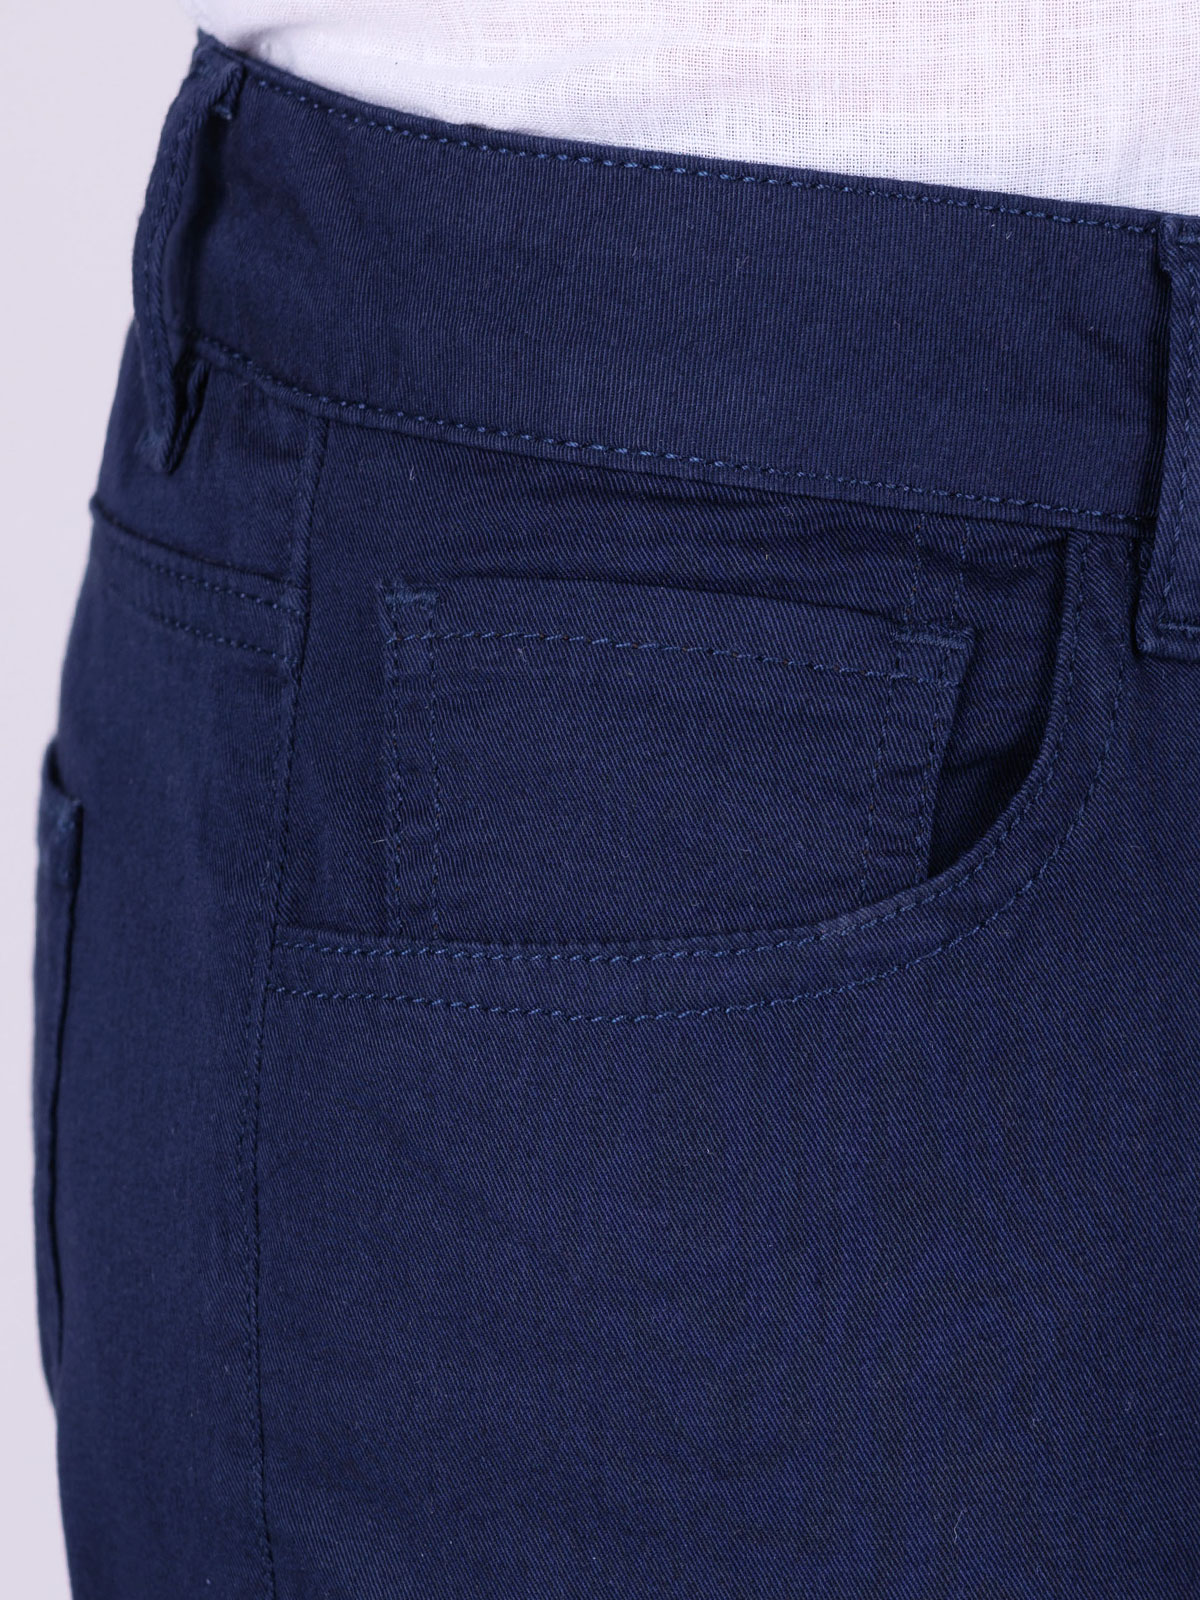 Тъмно син панталон с пет джоба - 60301 118.00 лв img2